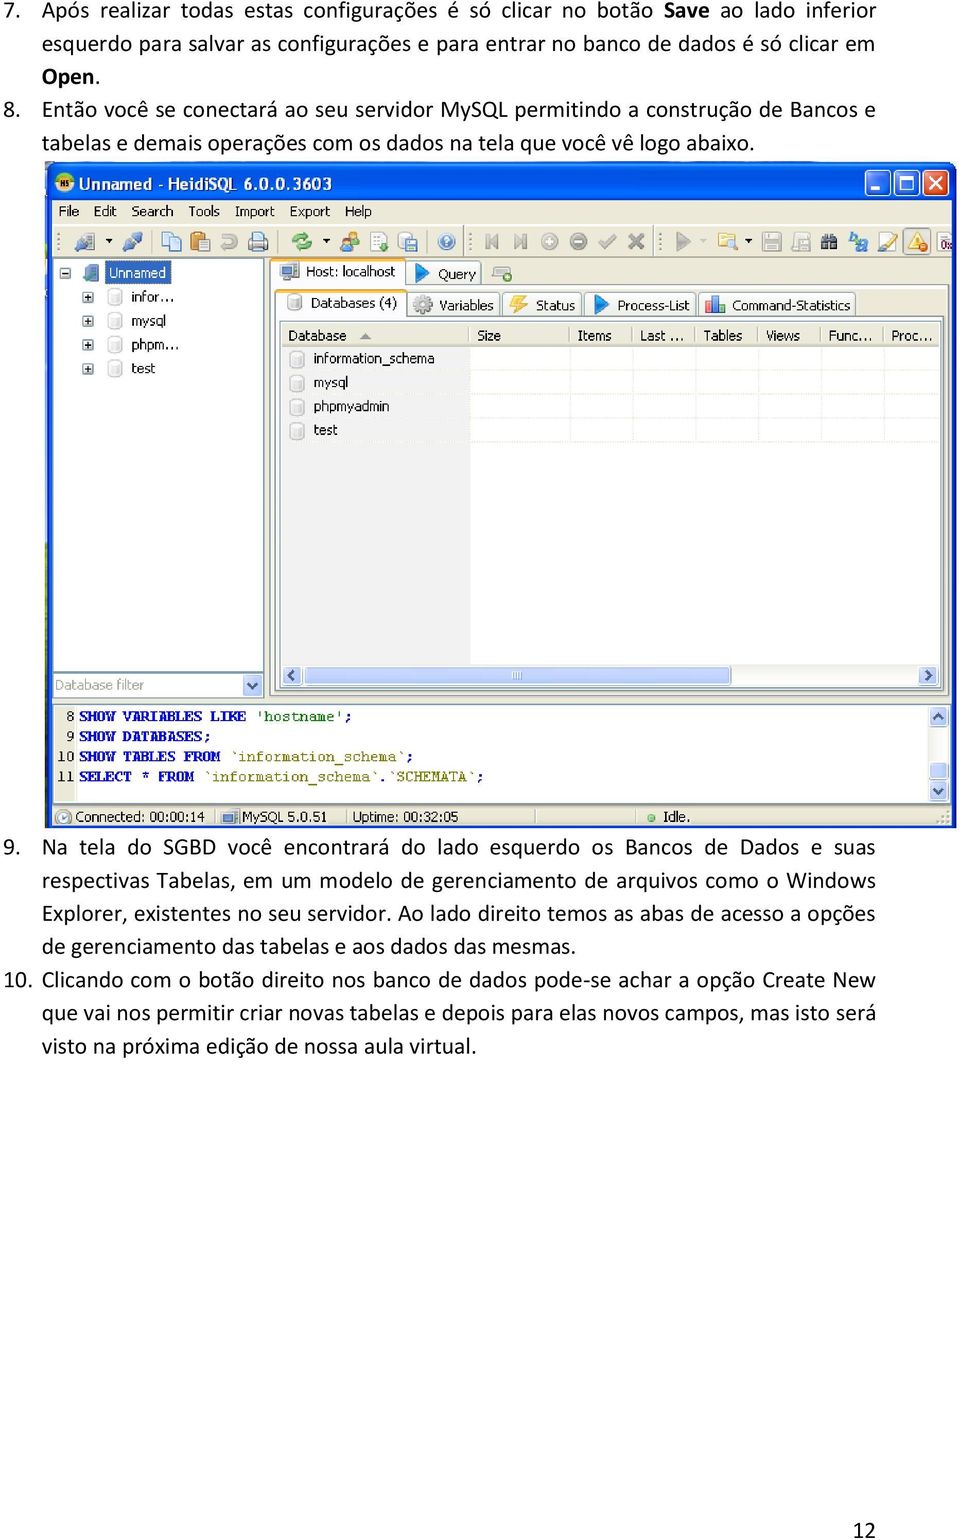 Na tela do SGBD você encontrará do lado esquerdo os Bancos de Dados e suas respectivas Tabelas, em um modelo de gerenciamento de arquivos como o Windows Explorer, existentes no seu servidor.